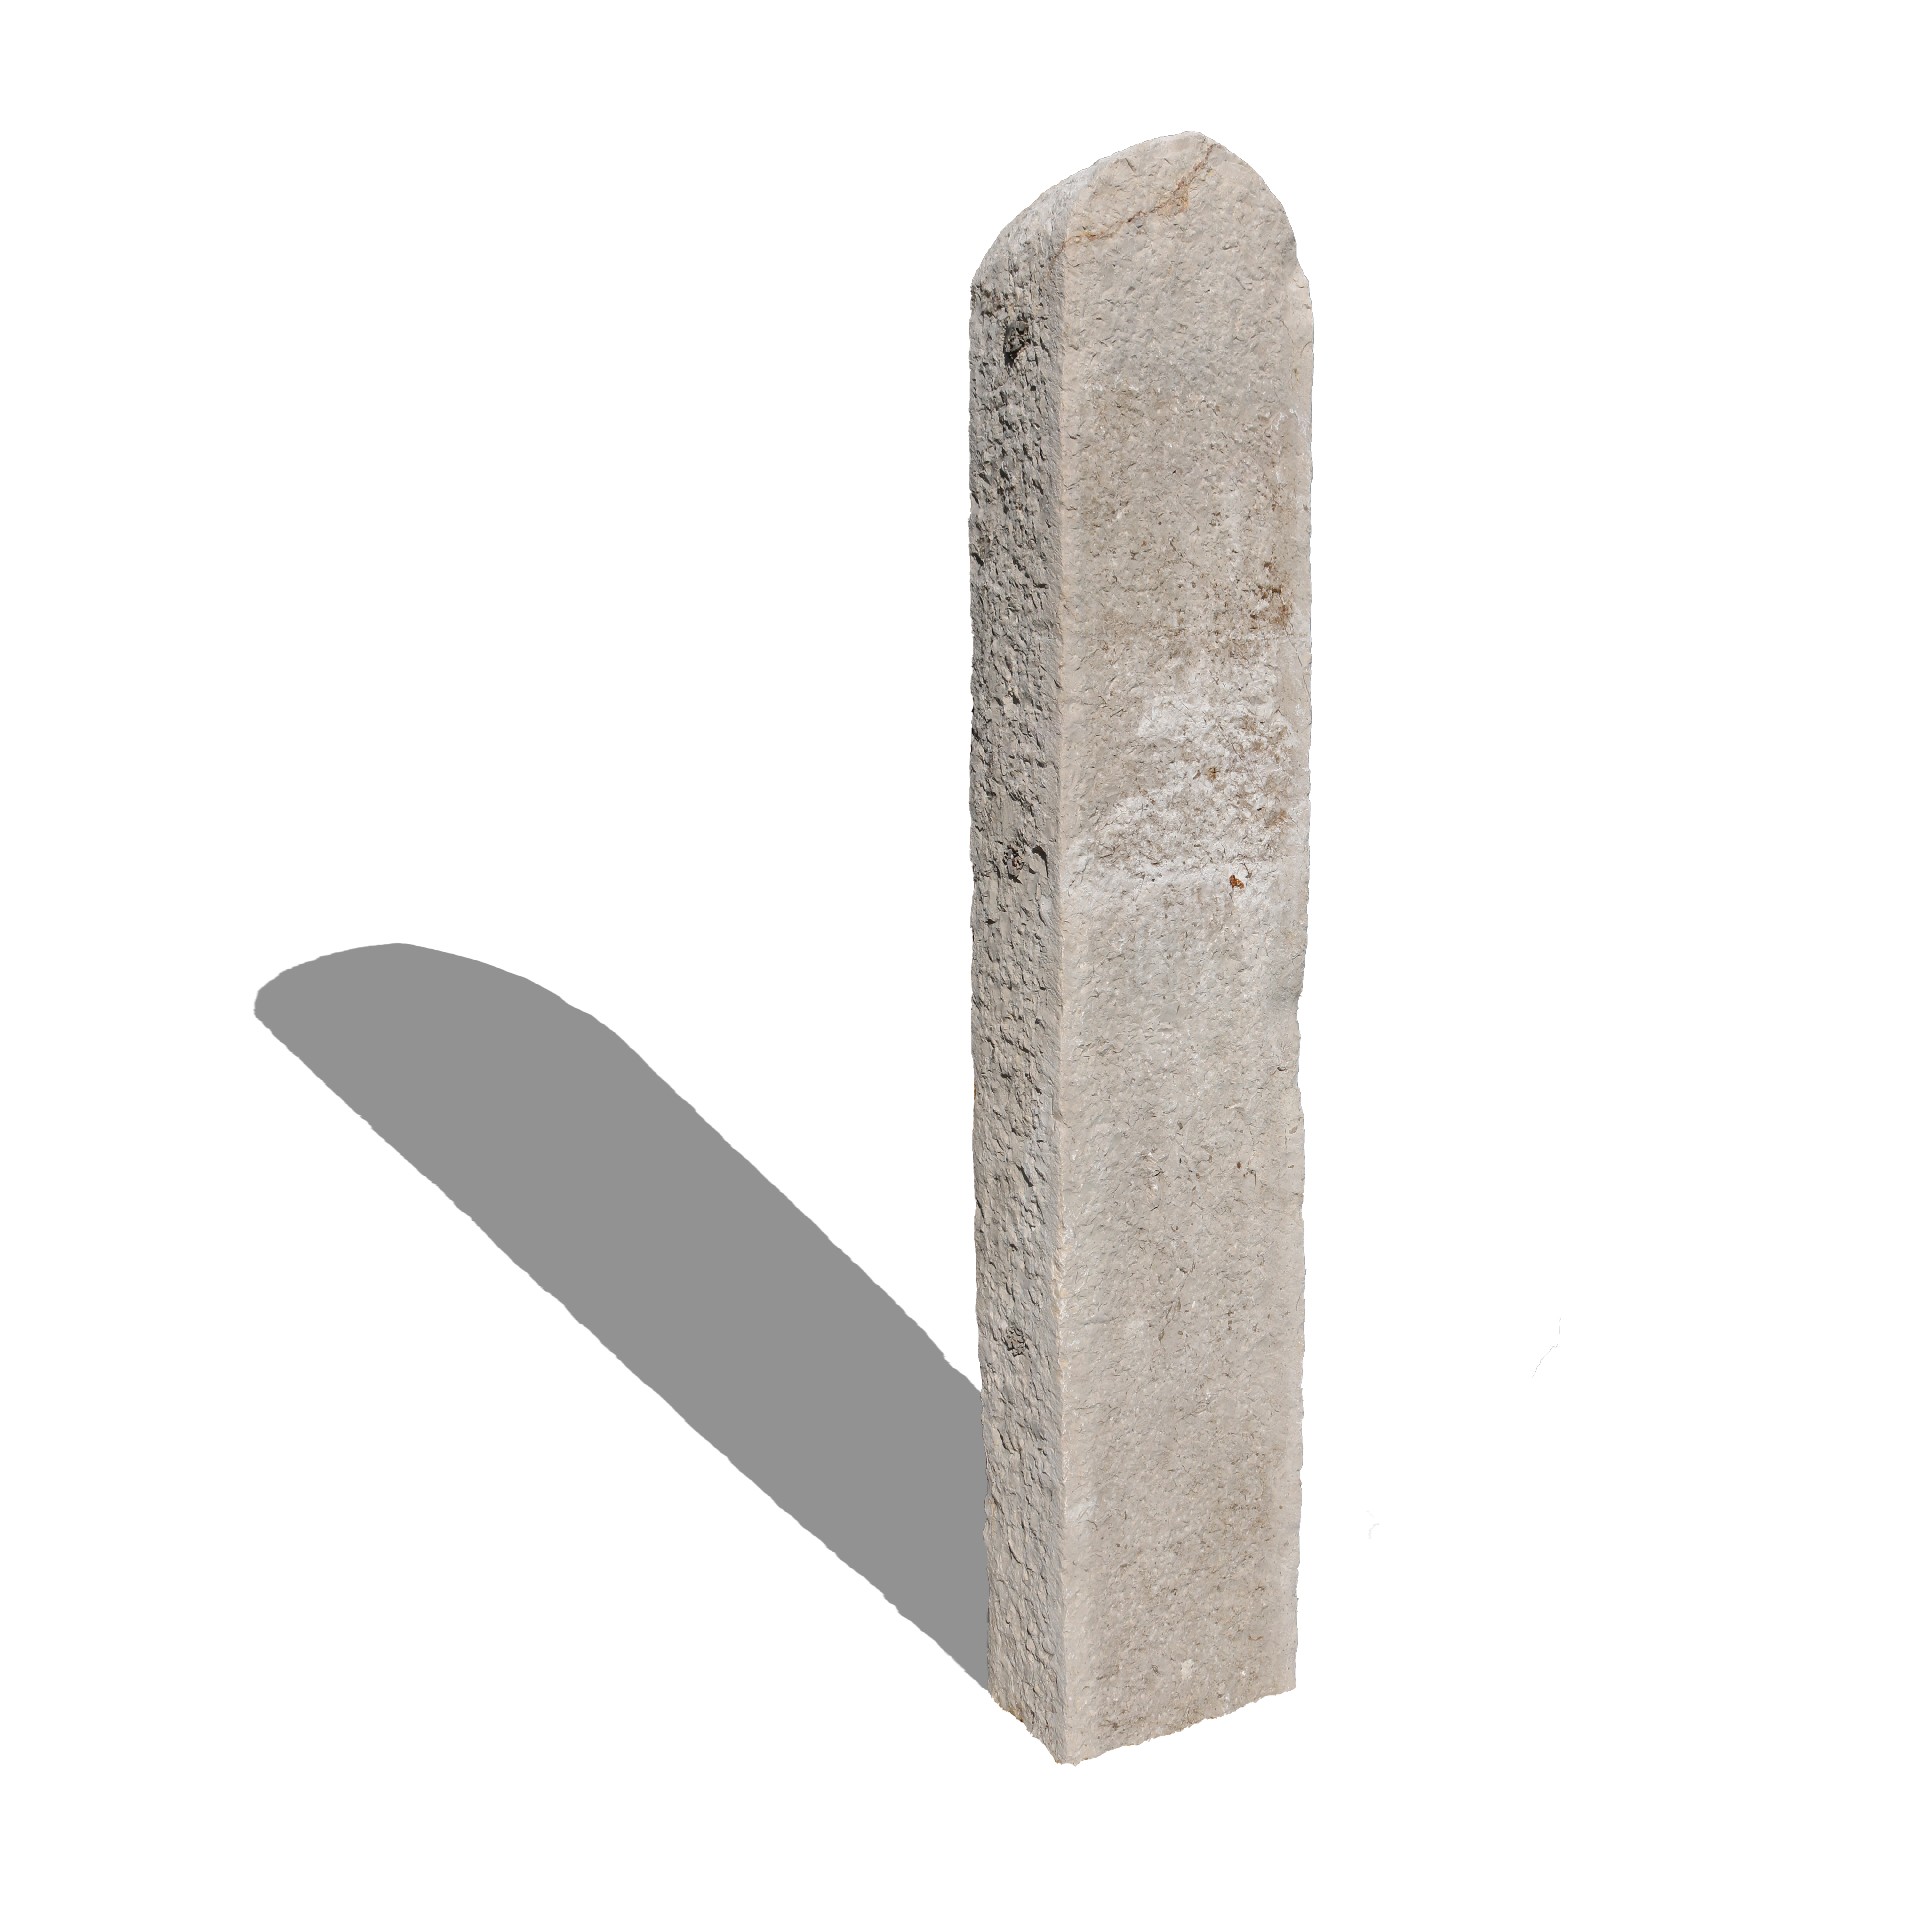 Antica colonna in pietra. Epoca 1900. - Colonne antiche - Architettura - Prodotti - Antichità Fiorillo